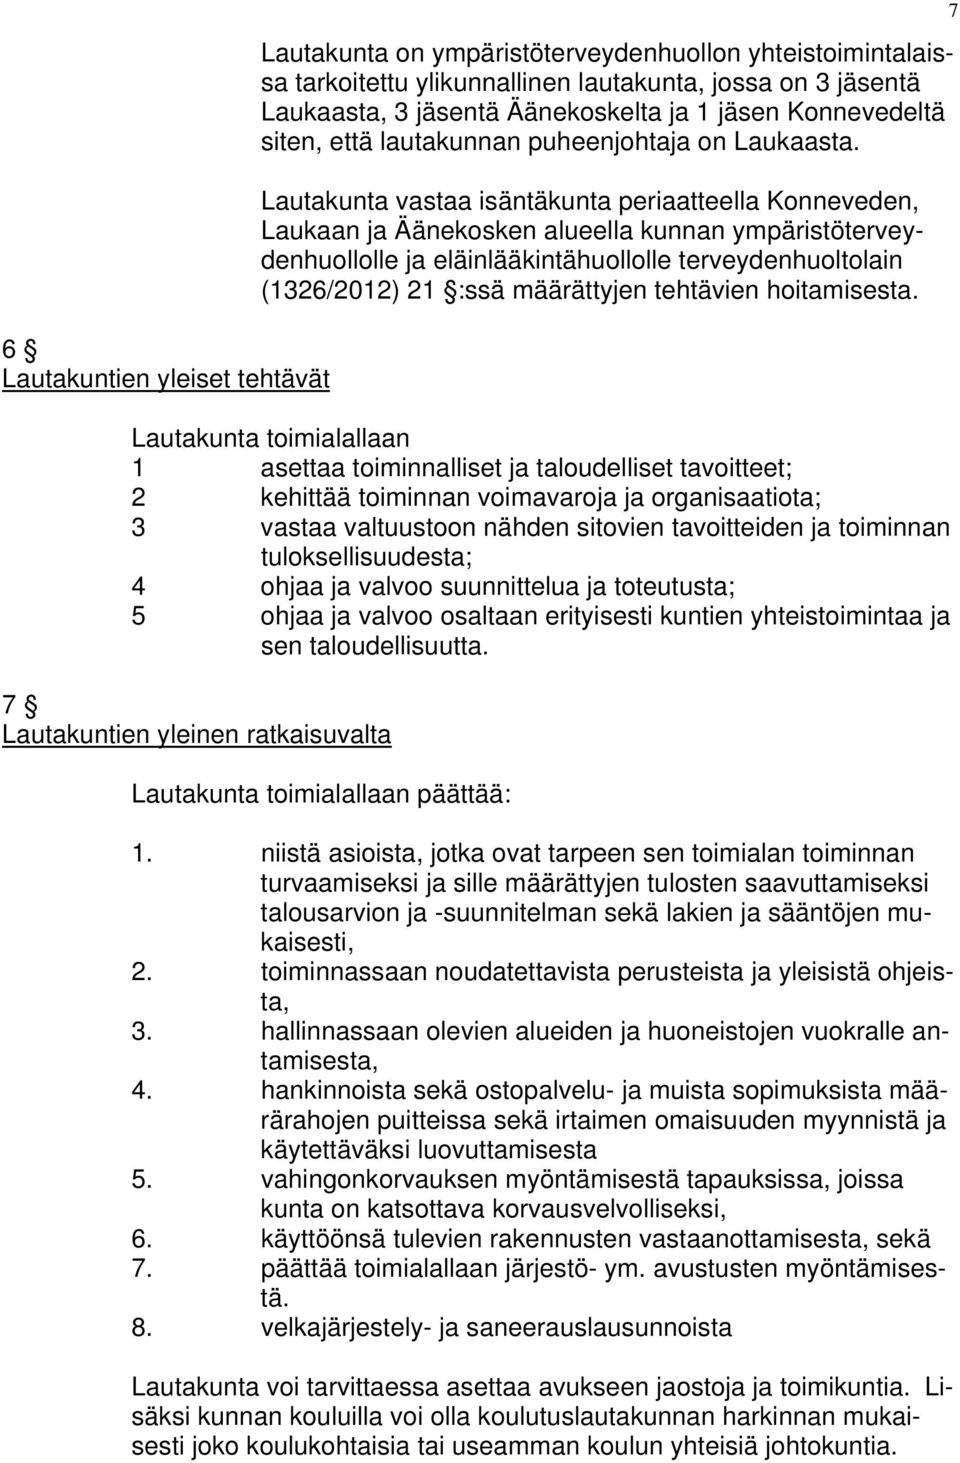 Lautakunta vastaa isäntäkunta periaatteella Konneveden, Laukaan ja Äänekosken alueella kunnan ympäristöterveydenhuollolle ja eläinlääkintähuollolle terveydenhuoltolain (1326/2012) 21 :ssä määrättyjen